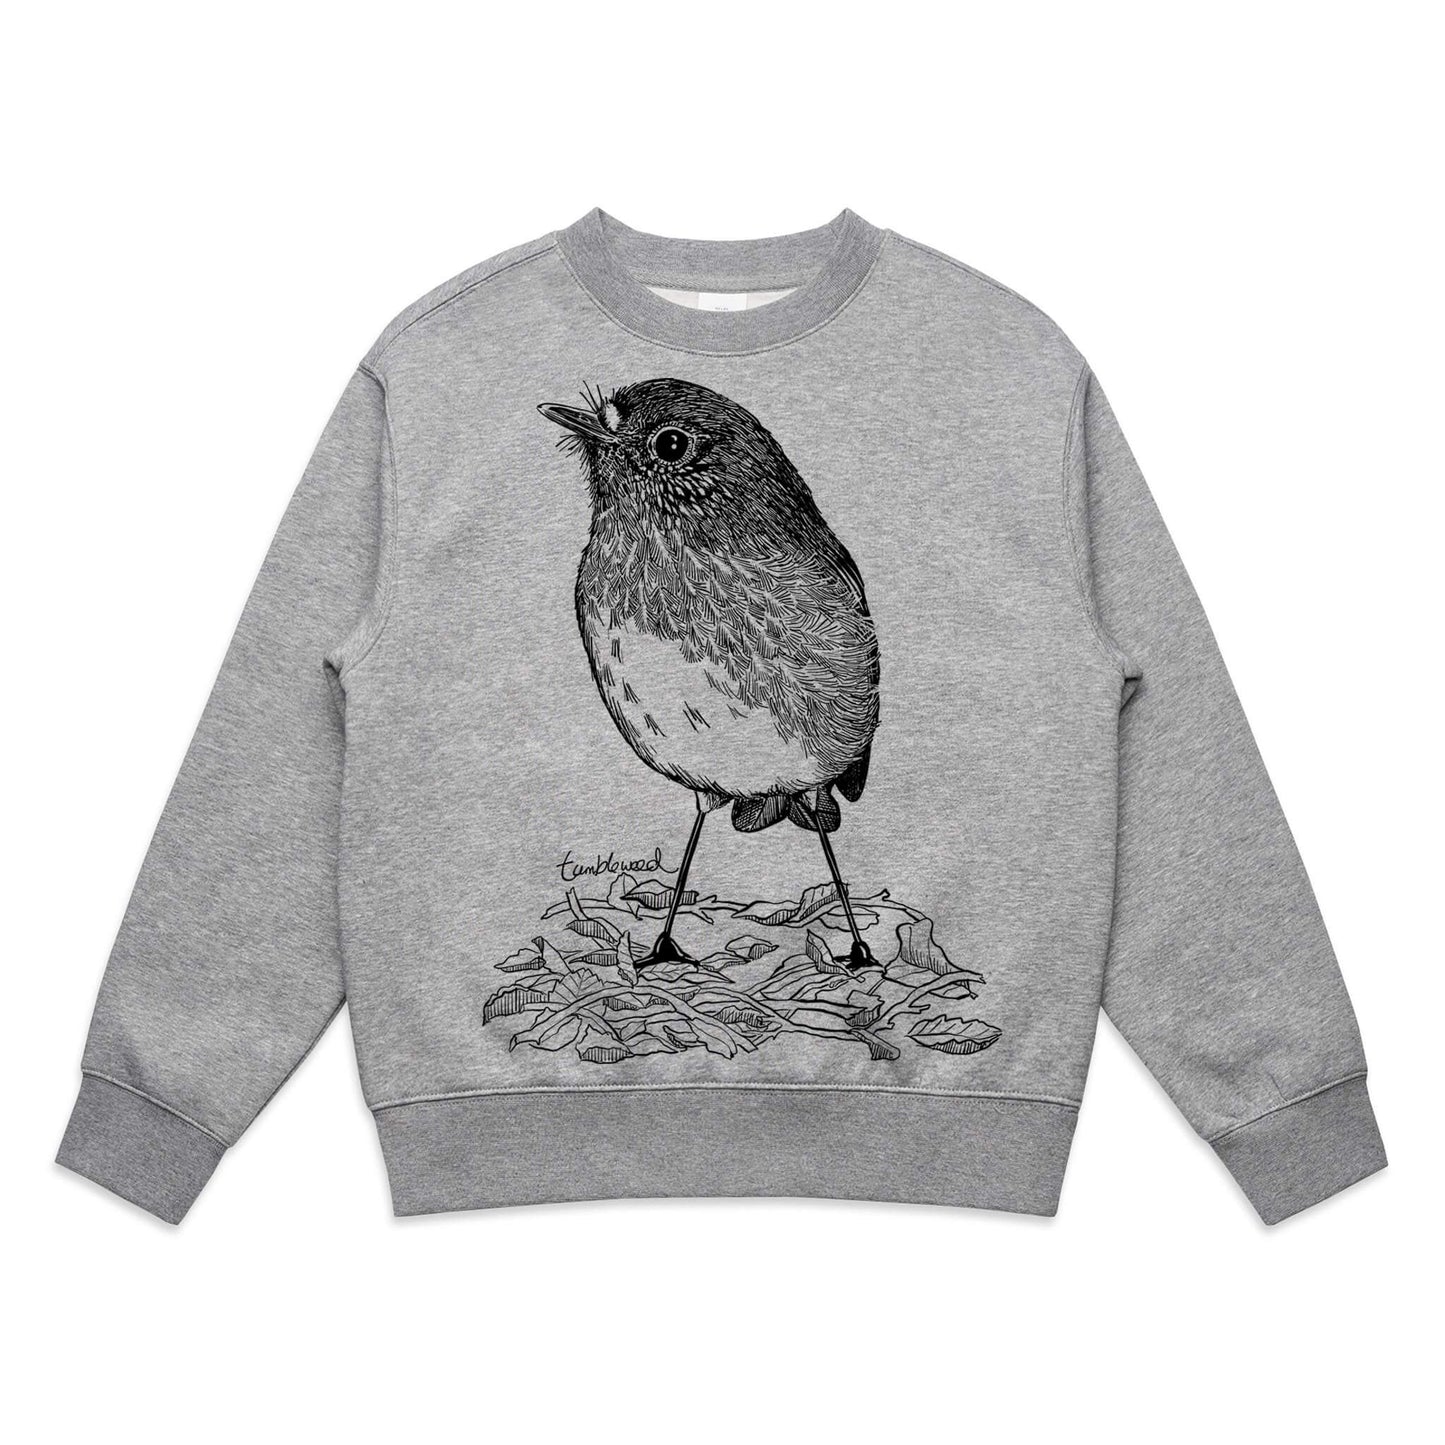 North Island Robin/toutouwai Kids' Sweatshirt